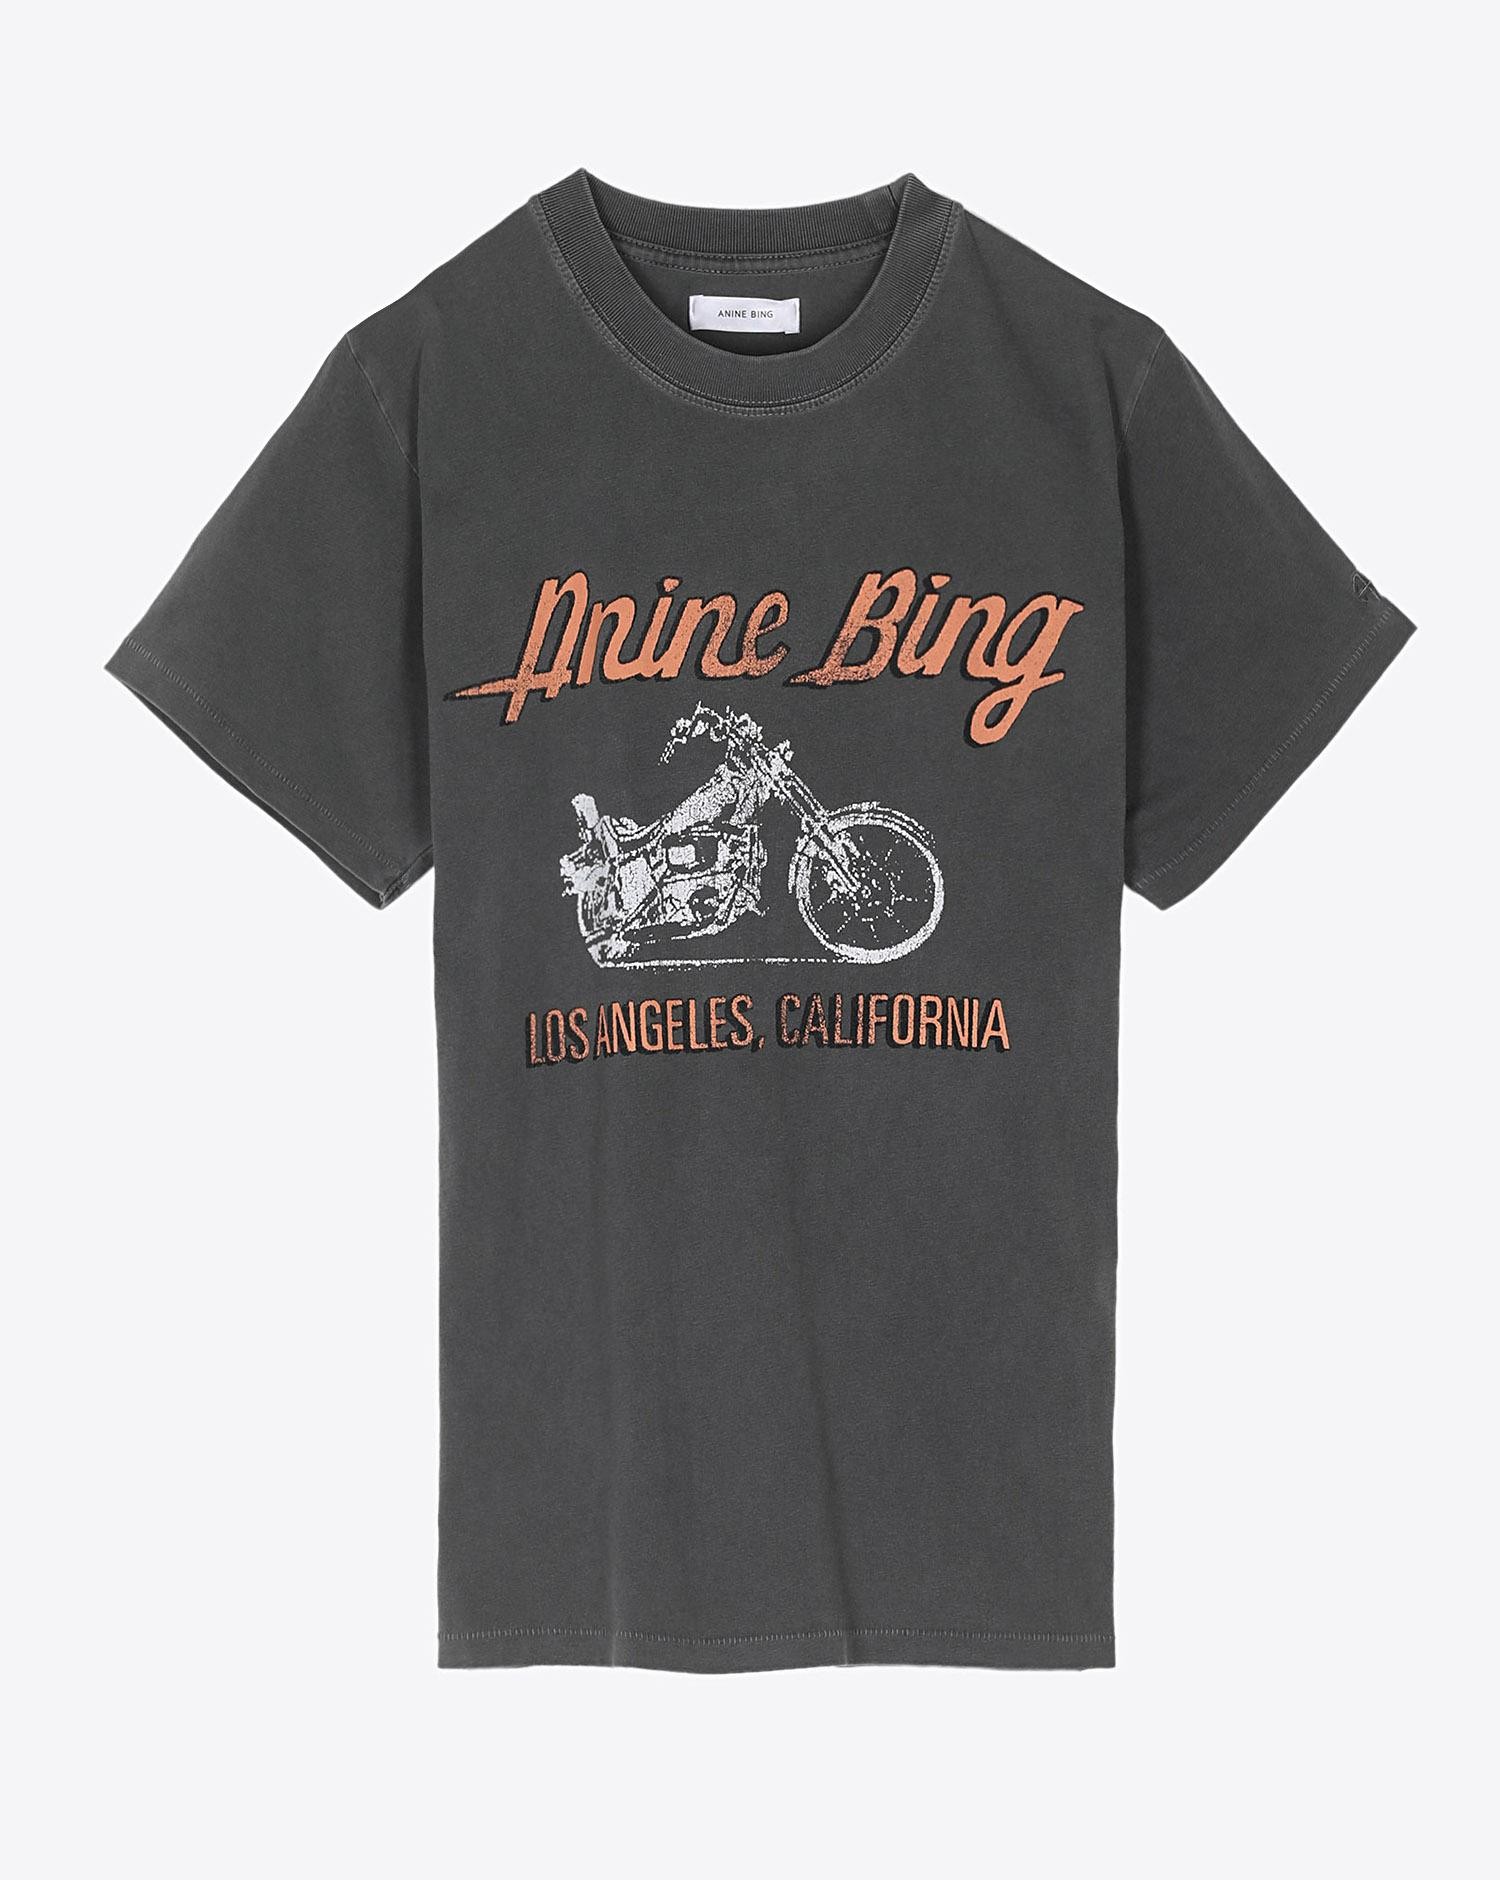 Anine Bing Lili Tee - Gun Powder Motorcycle - Washed Grey 